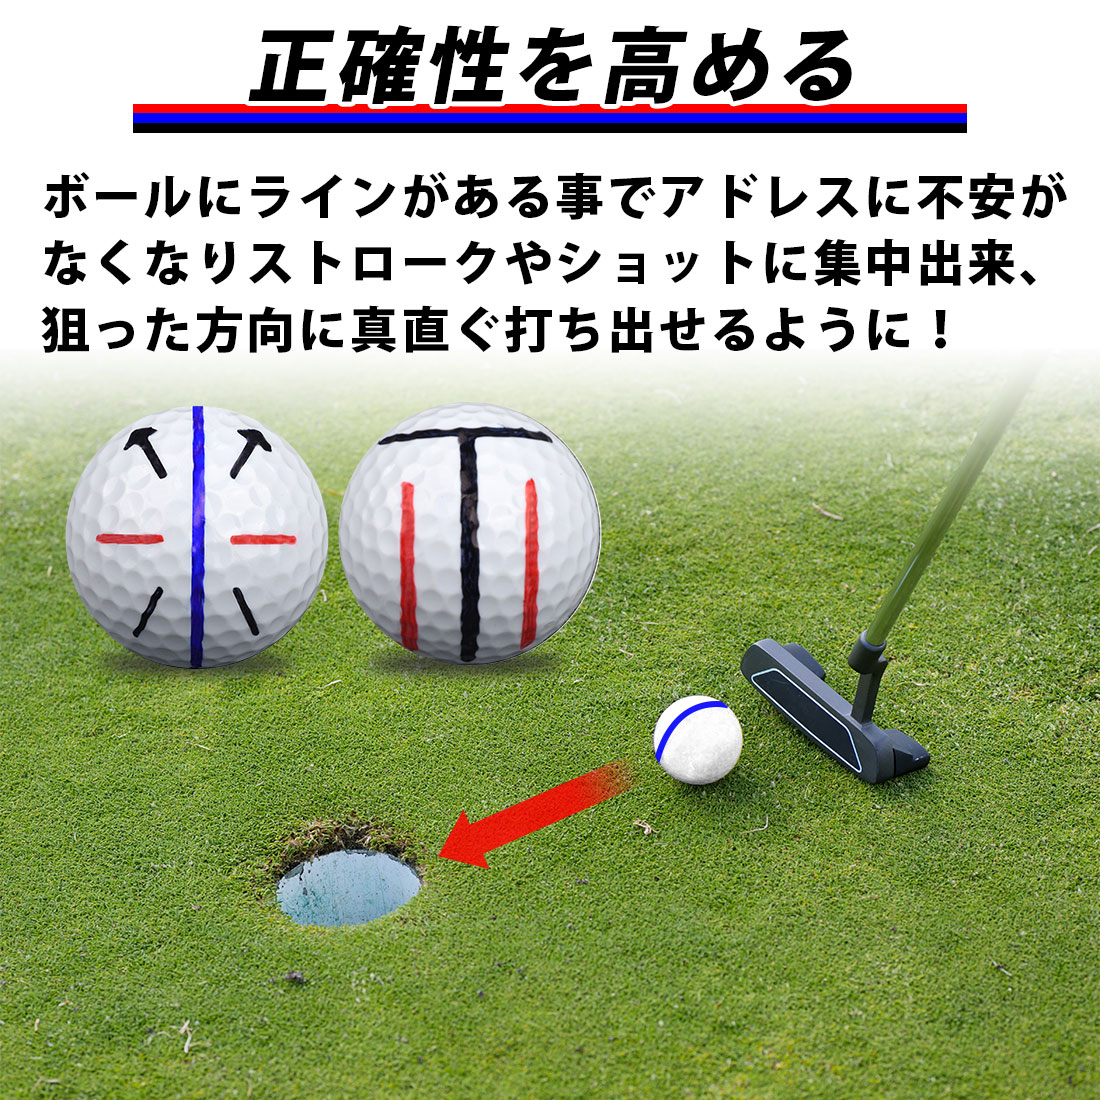 ゴルフボールラインマーカー ペンセット パター 改善 3点セット ライン 赤青